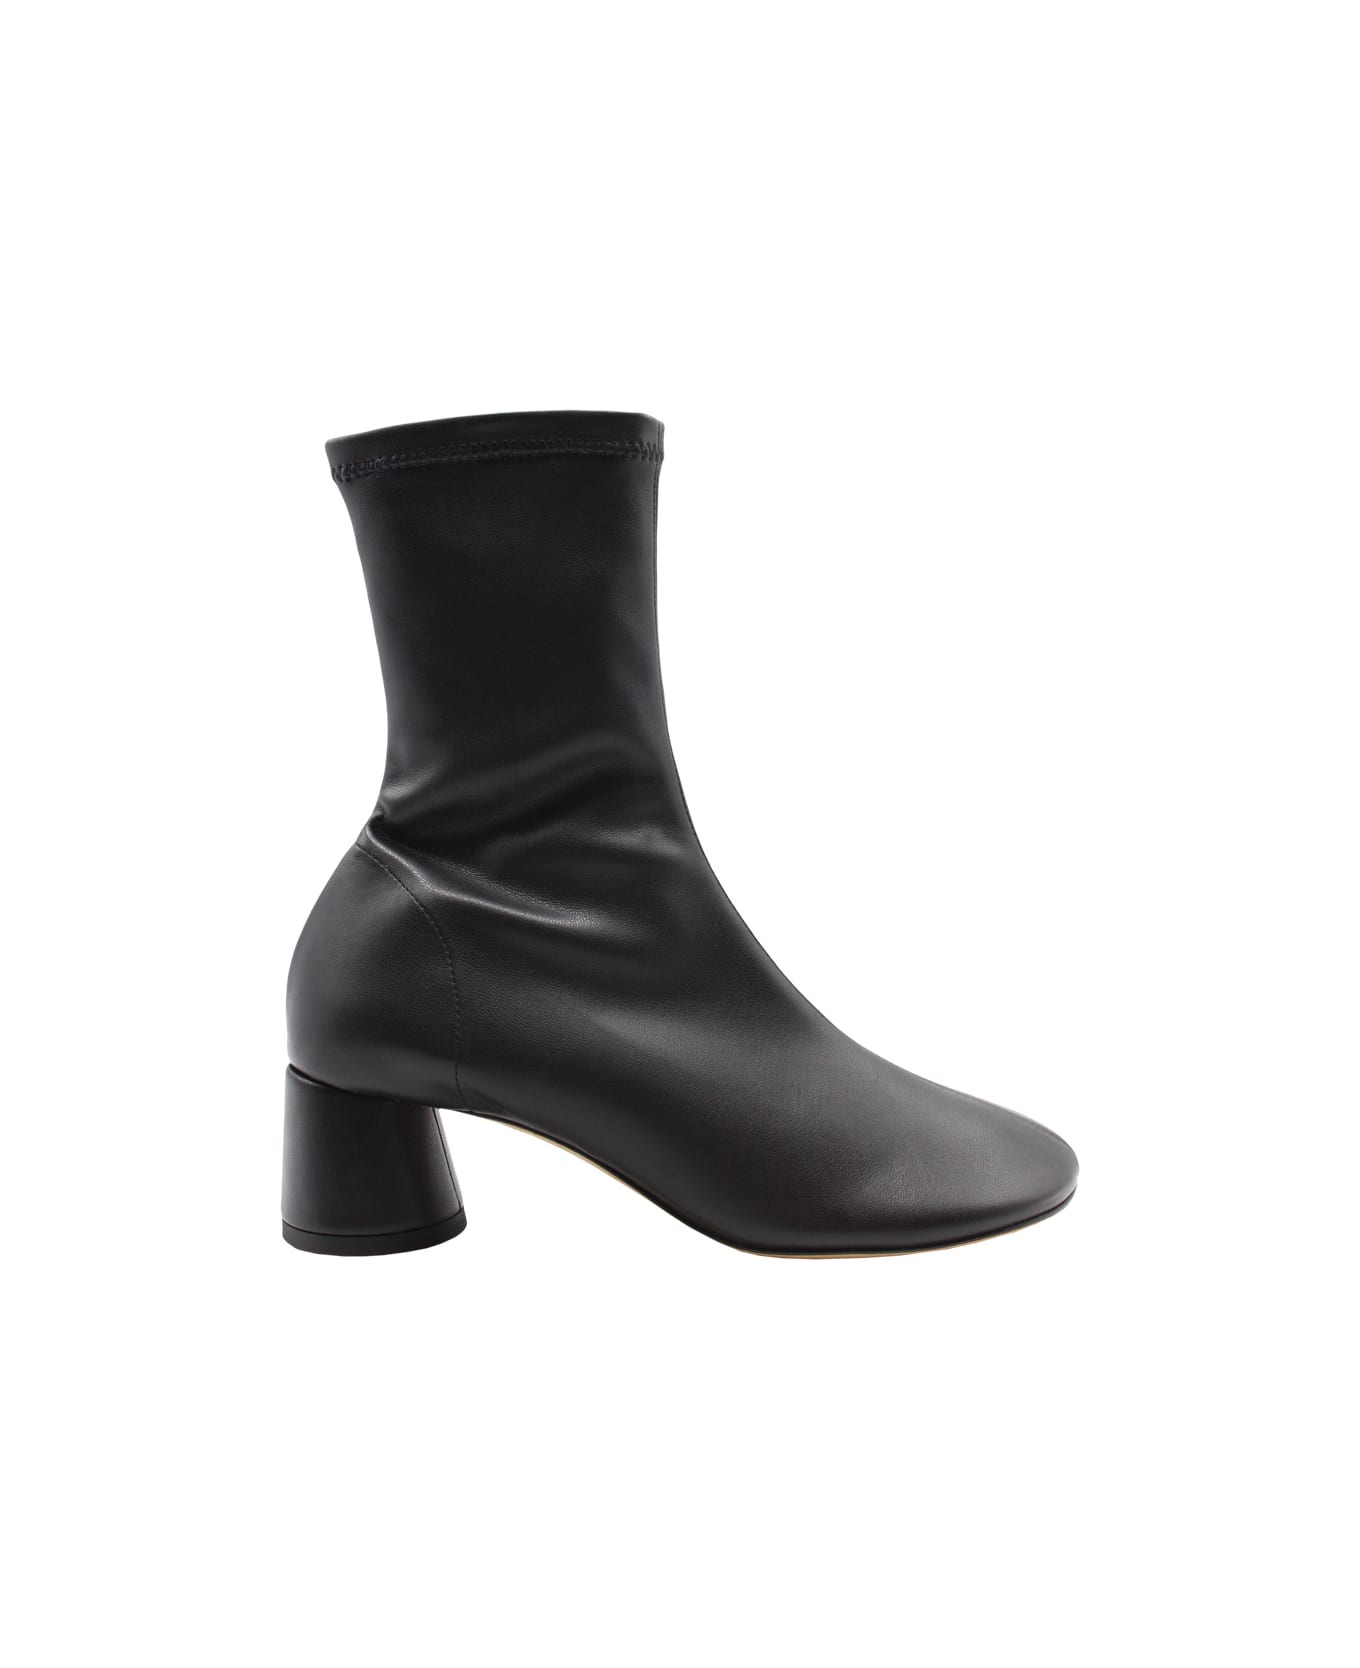 Proenza Schouler Glove Stretch Ankle Boots - Black ブーツ